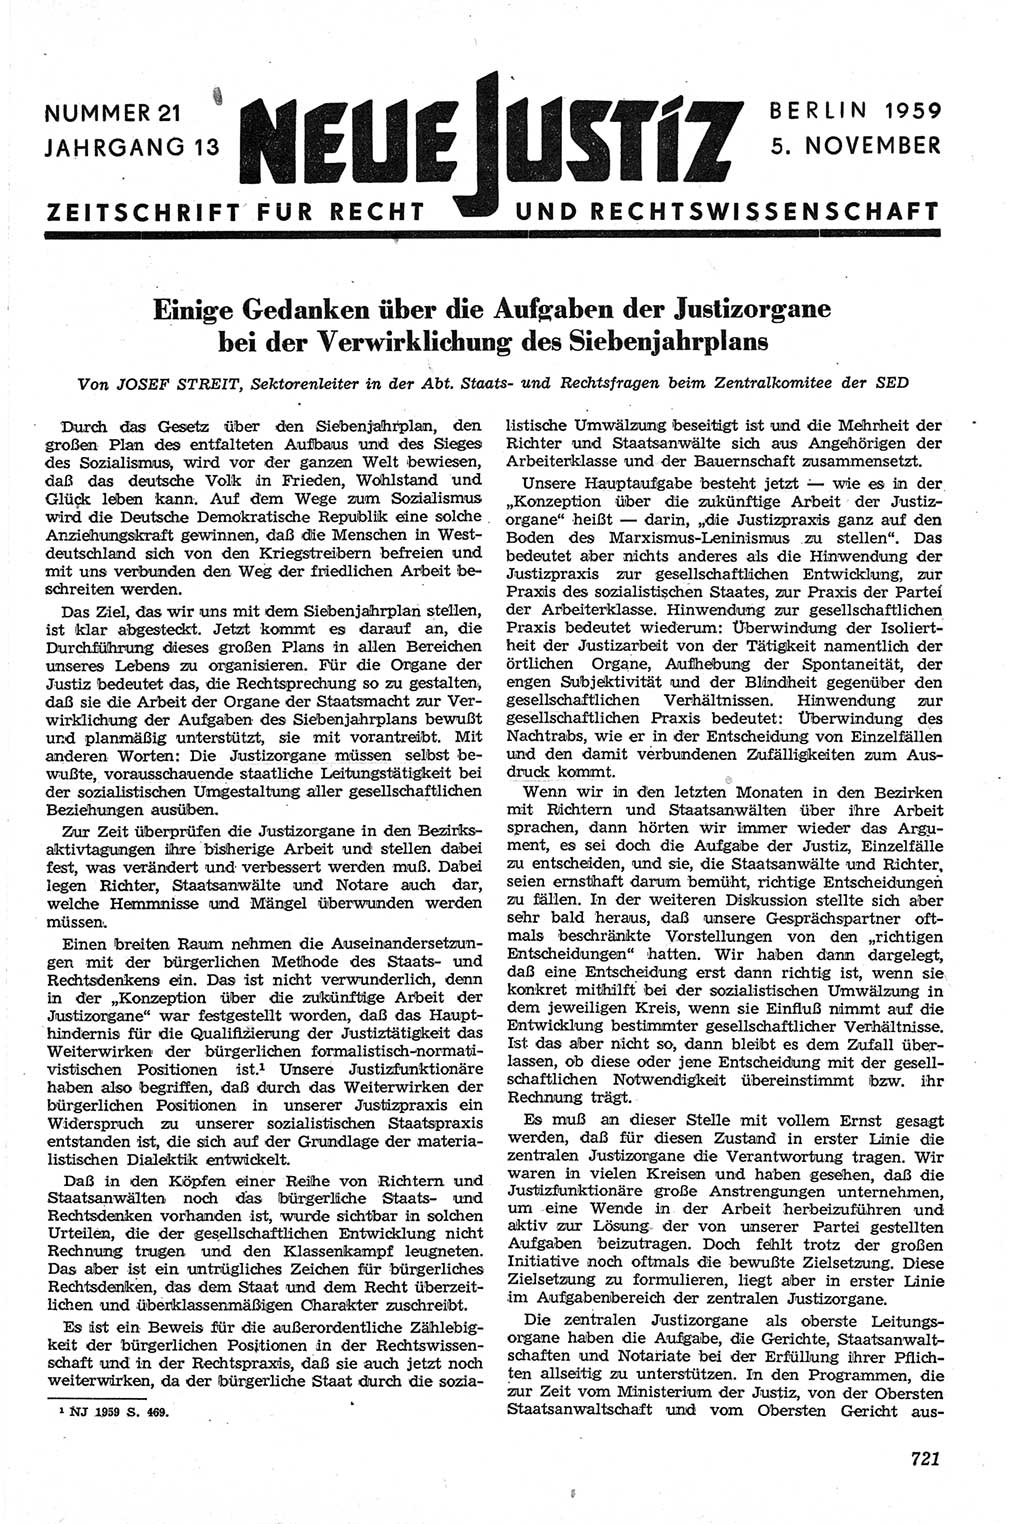 Neue Justiz (NJ), Zeitschrift für Recht und Rechtswissenschaft [Deutsche Demokratische Republik (DDR)], 13. Jahrgang 1959, Seite 721 (NJ DDR 1959, S. 721)